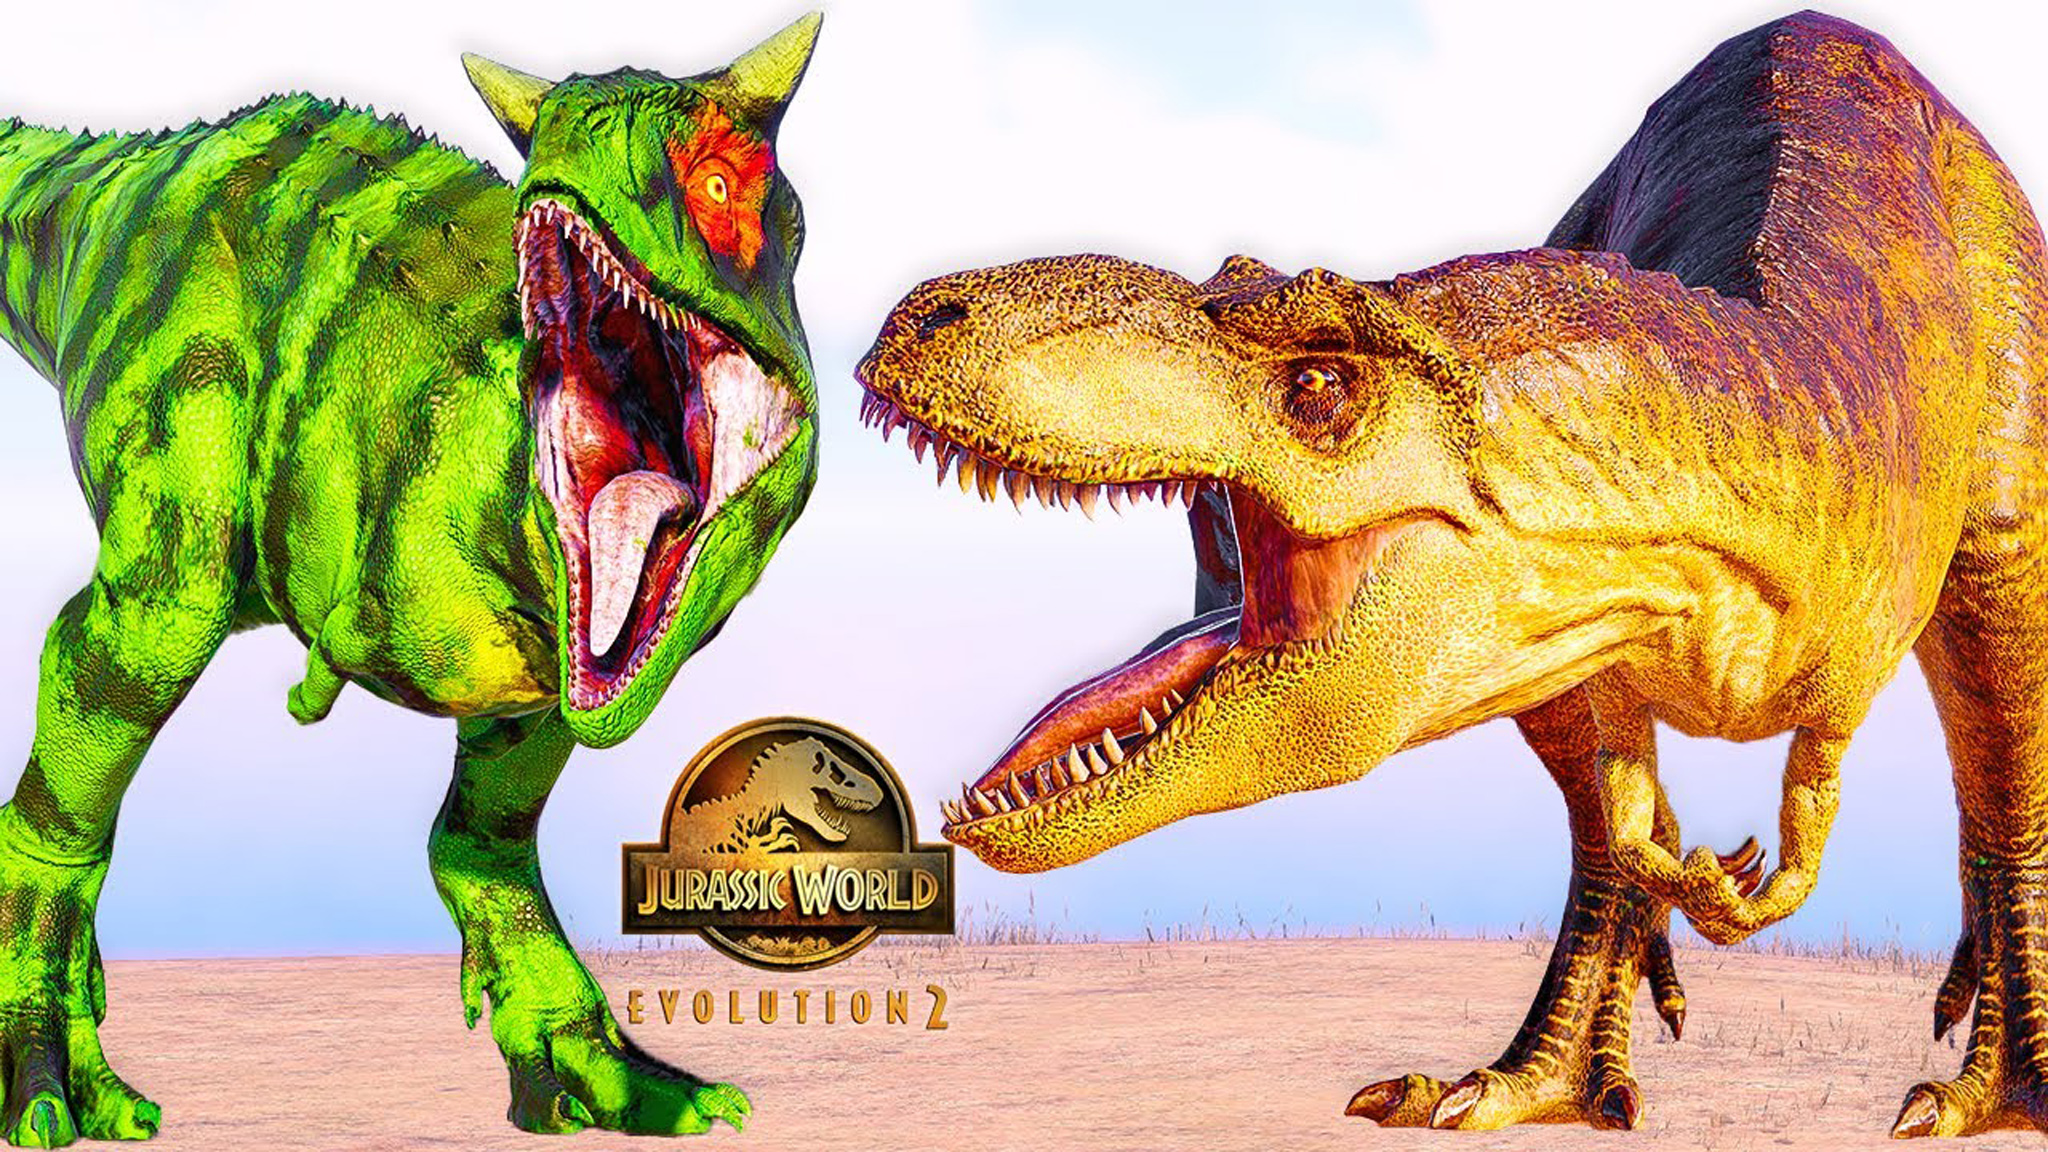 异色食肉牛龙,艾伯塔龙 vs 暴龙 ~ 侏罗纪世界进化 2 代